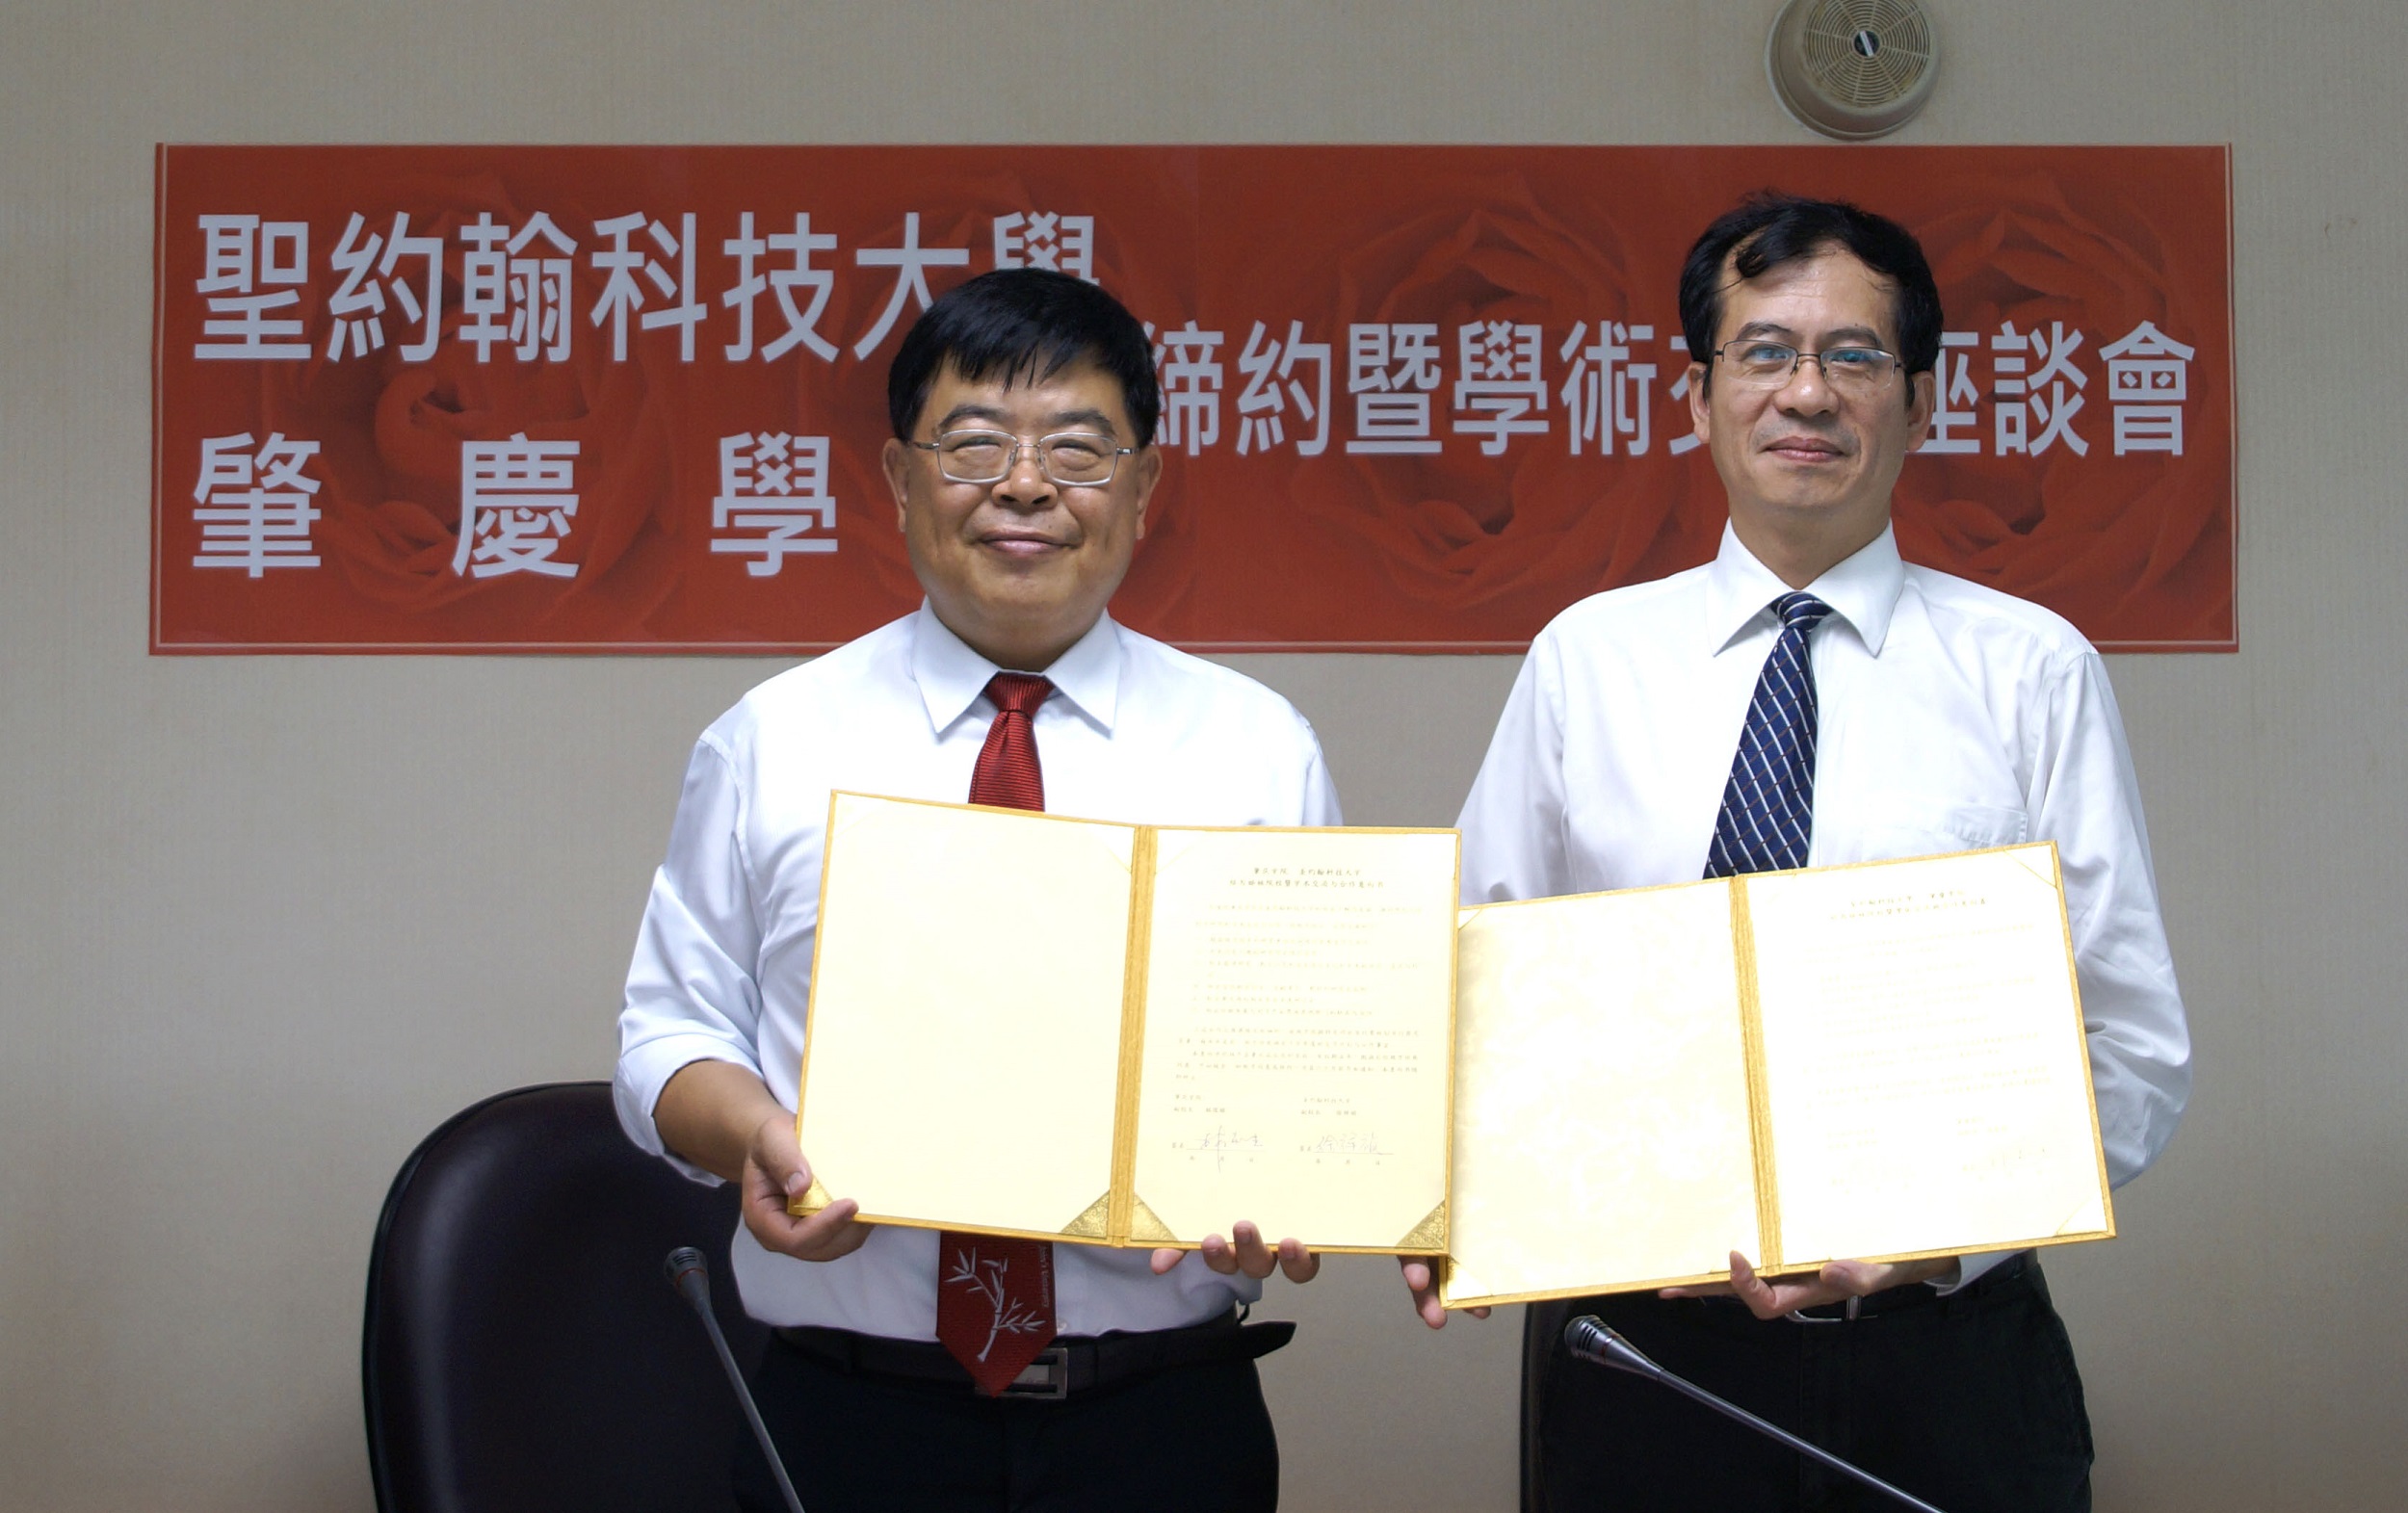 聖約翰科大副校長徐祥禎（左）與肇慶學院副校長林俊睦（右）共同簽署合作意向書